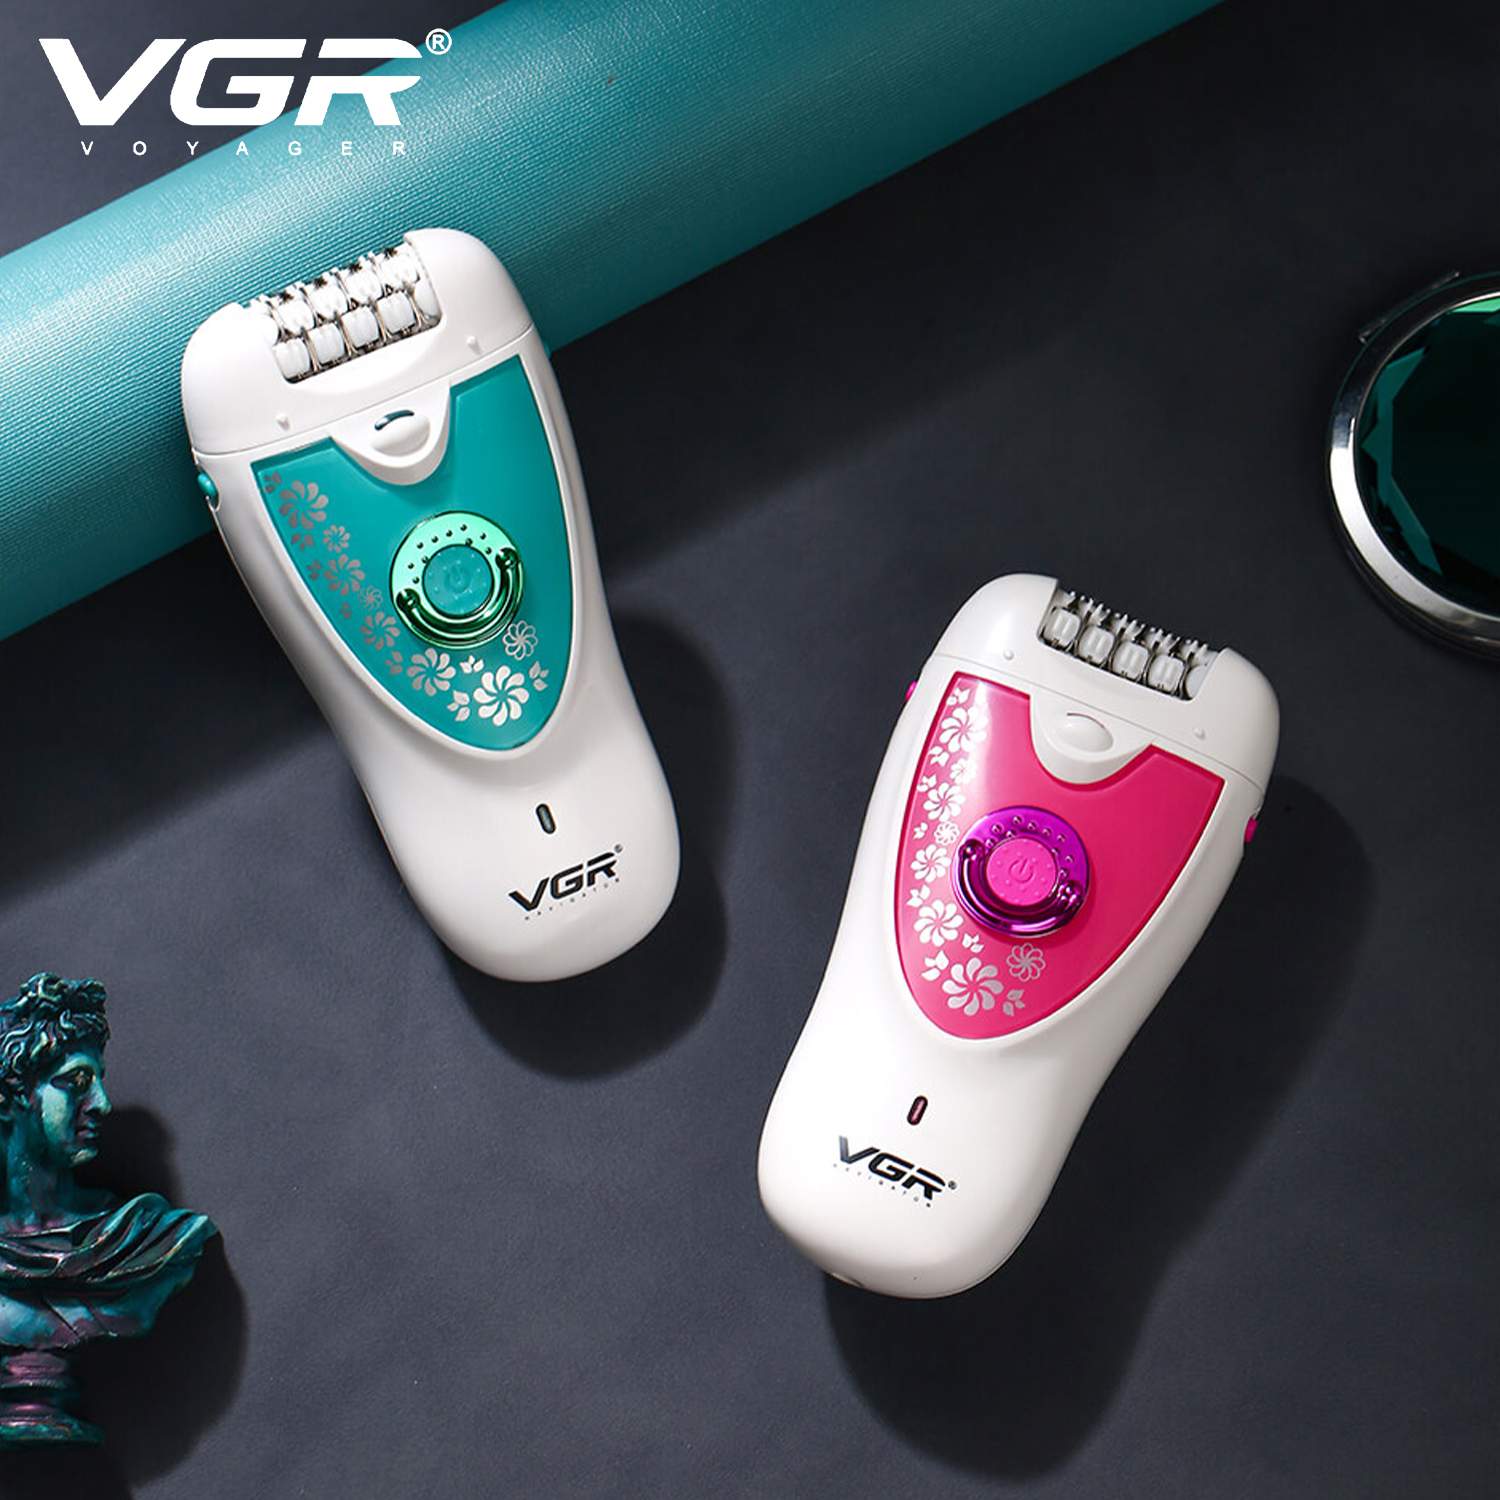 VGR, VGRindia, VGRofficial, VGR V-722